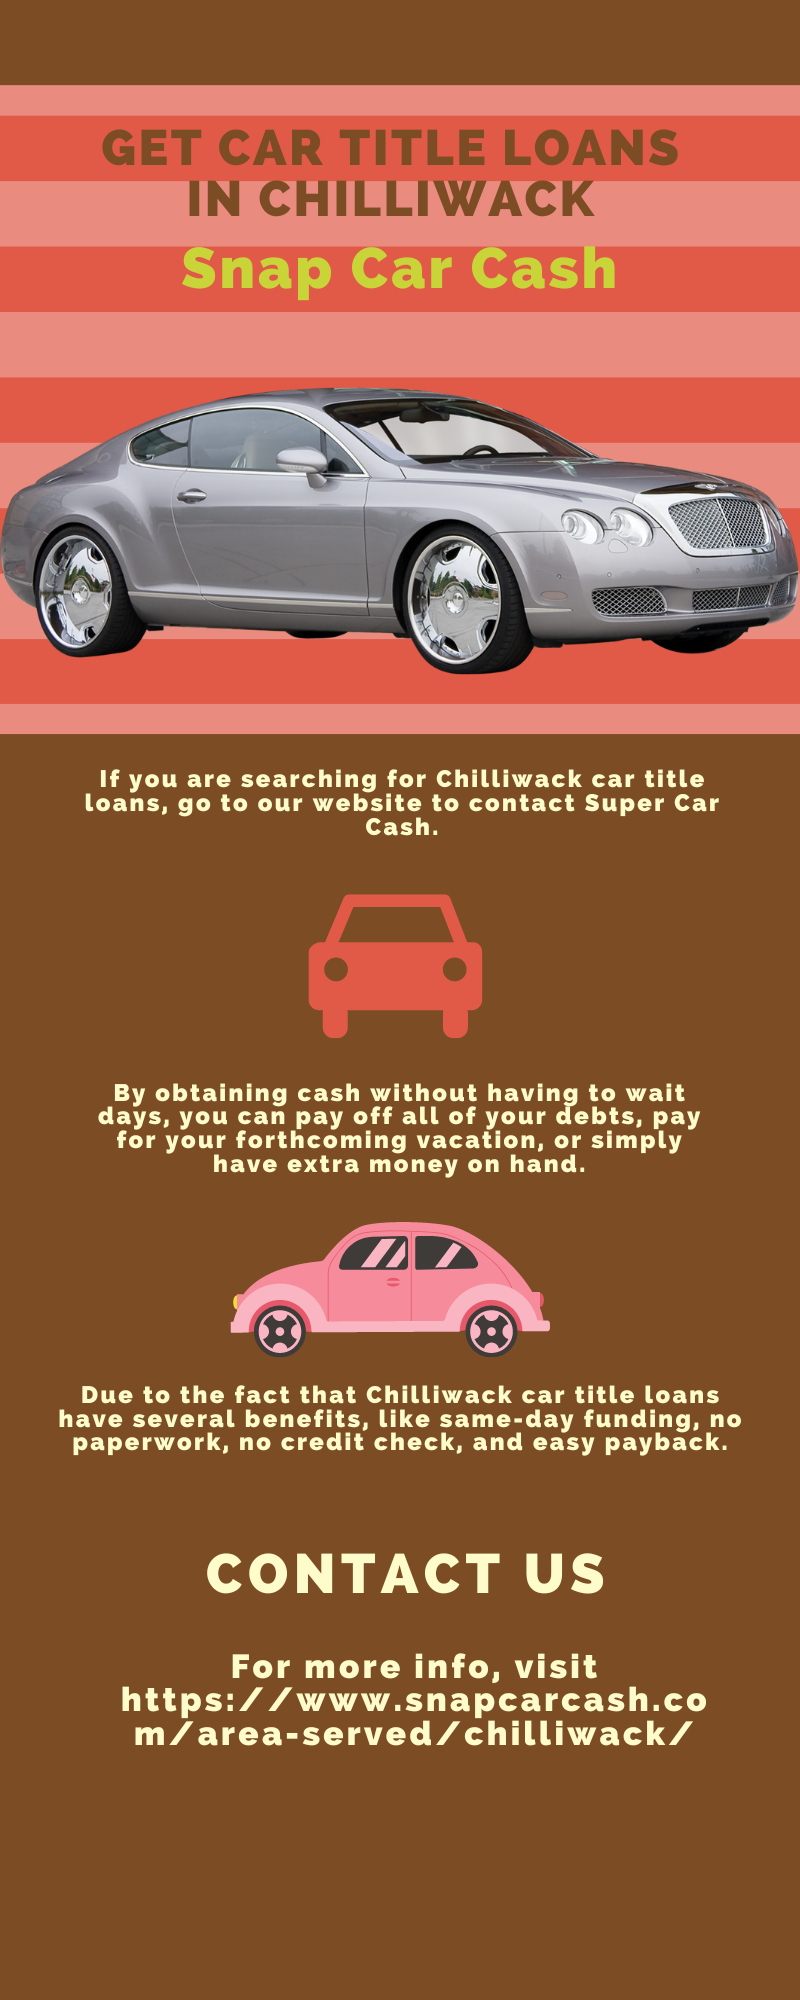 Get Secured Car Title Loans Chilliwack